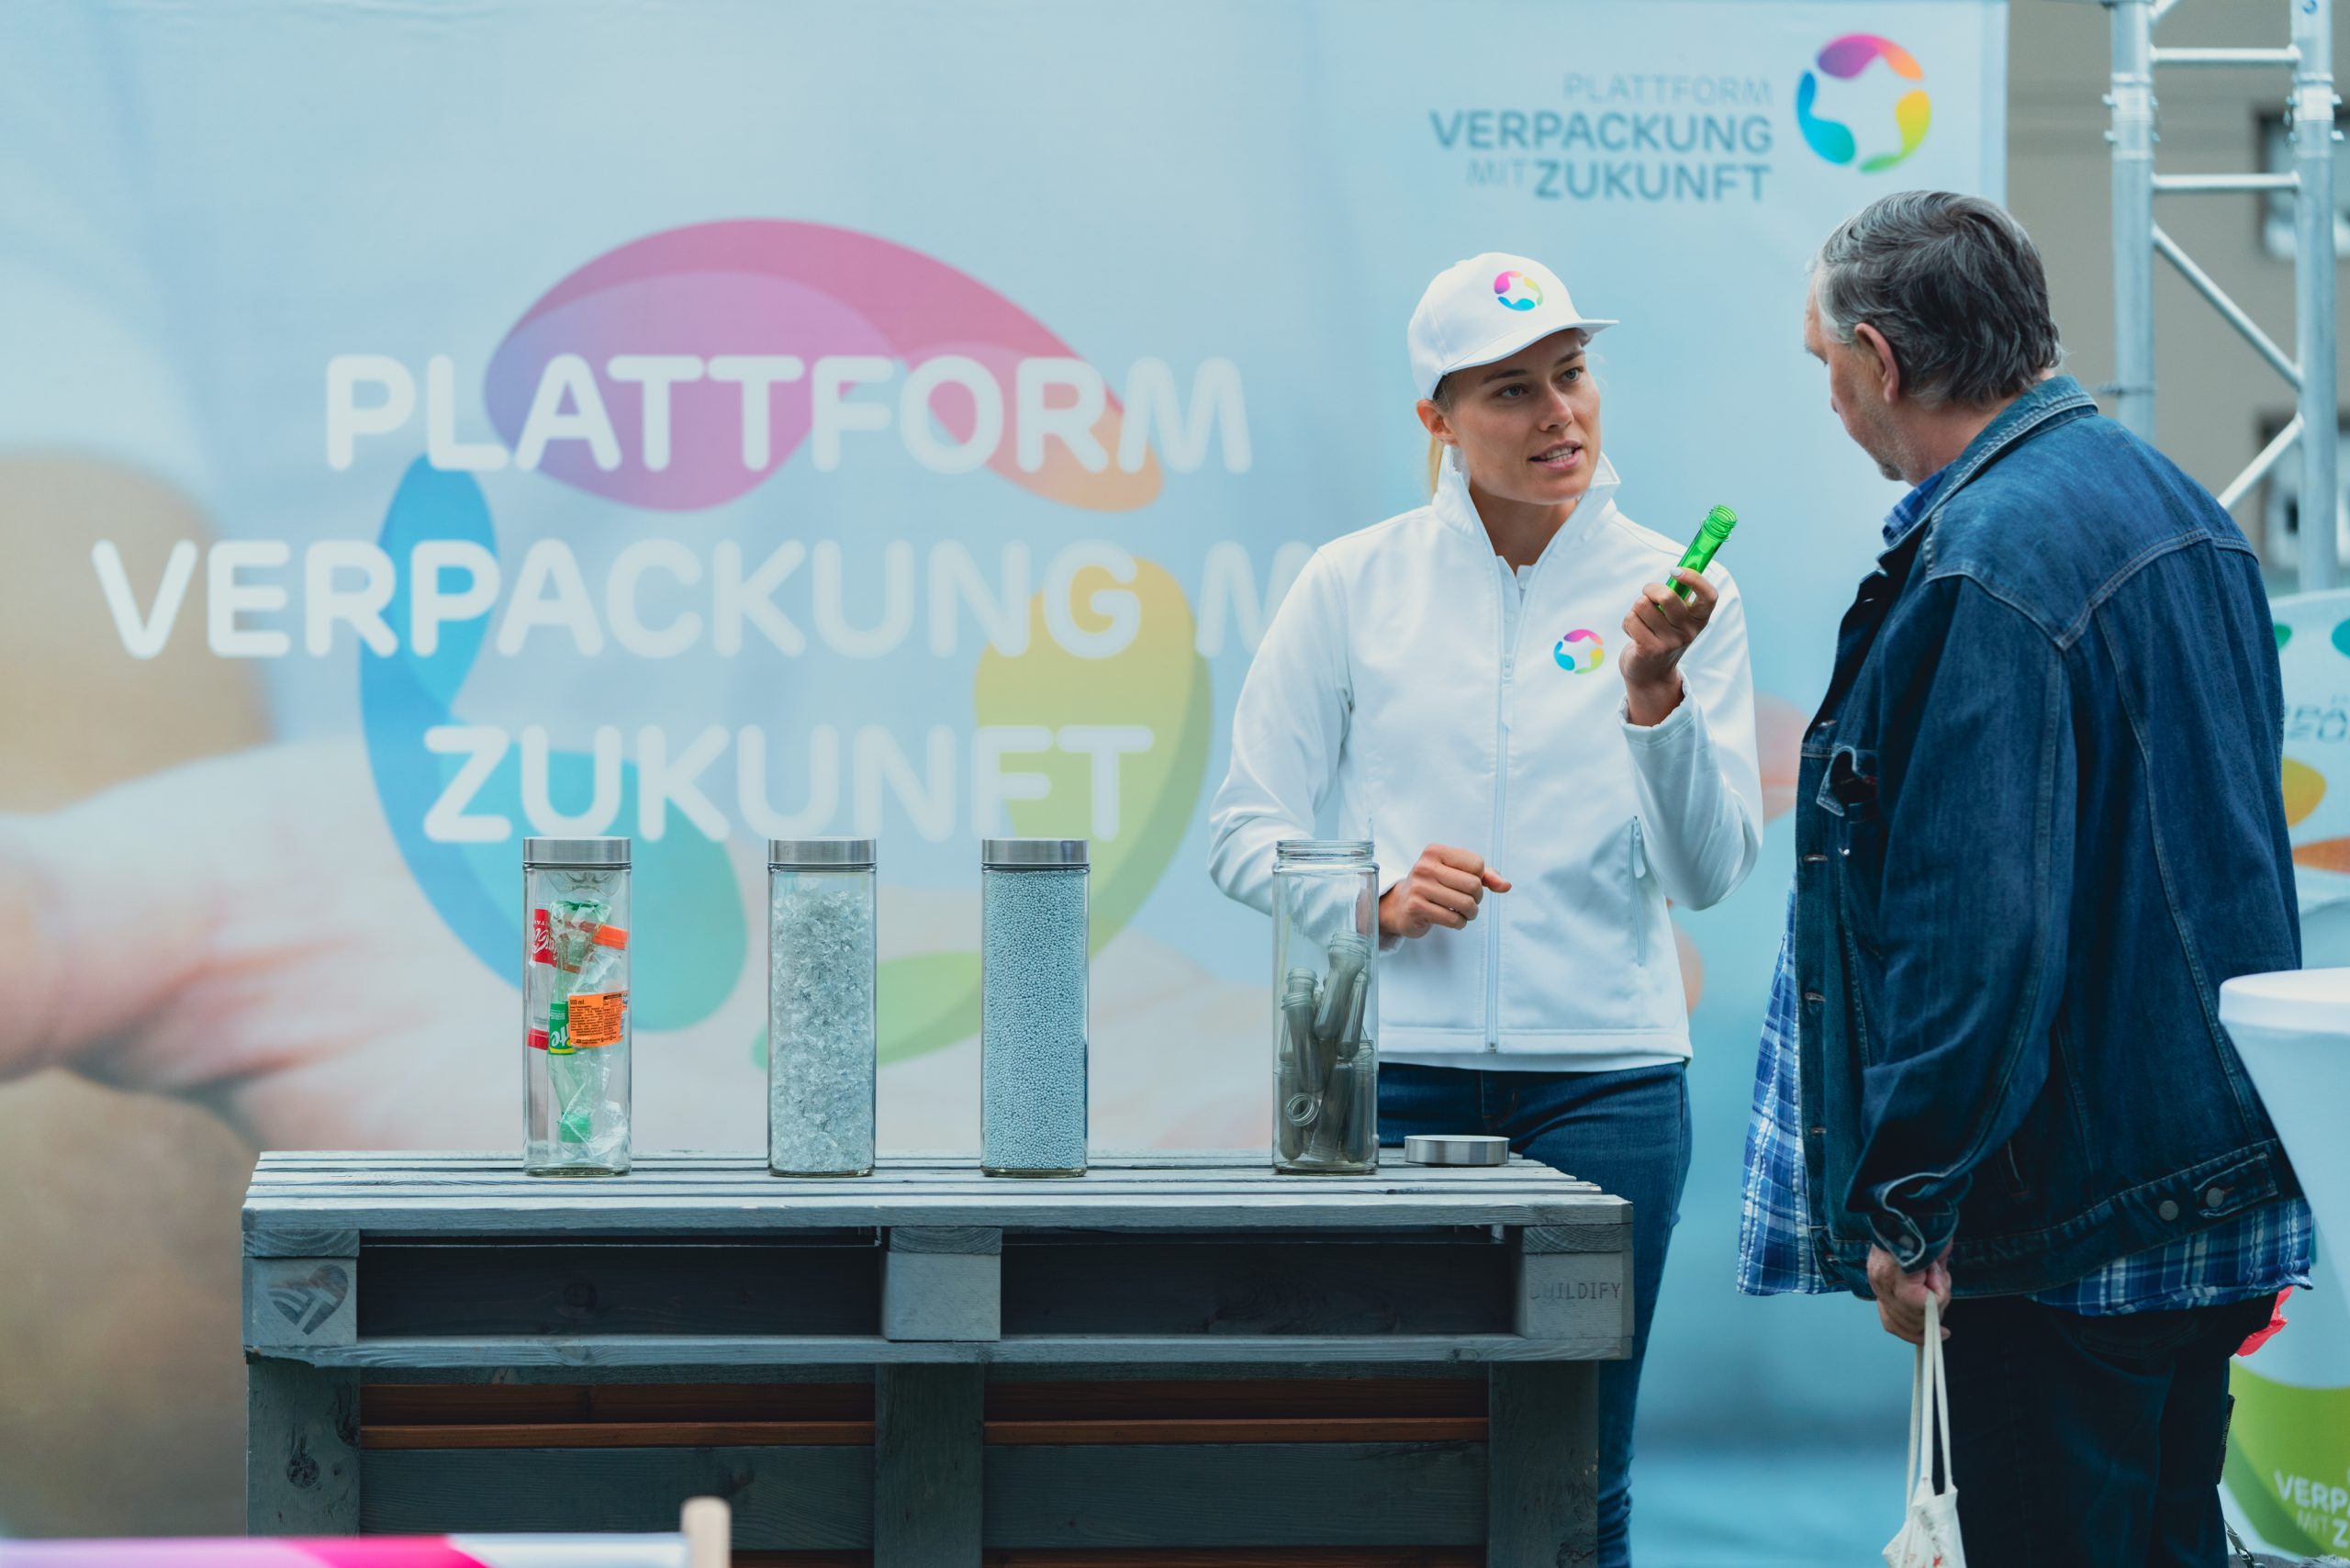 Plattform Verpackung mit Zukunft - Pop-Up Stand Innsbruck mit MPREIS